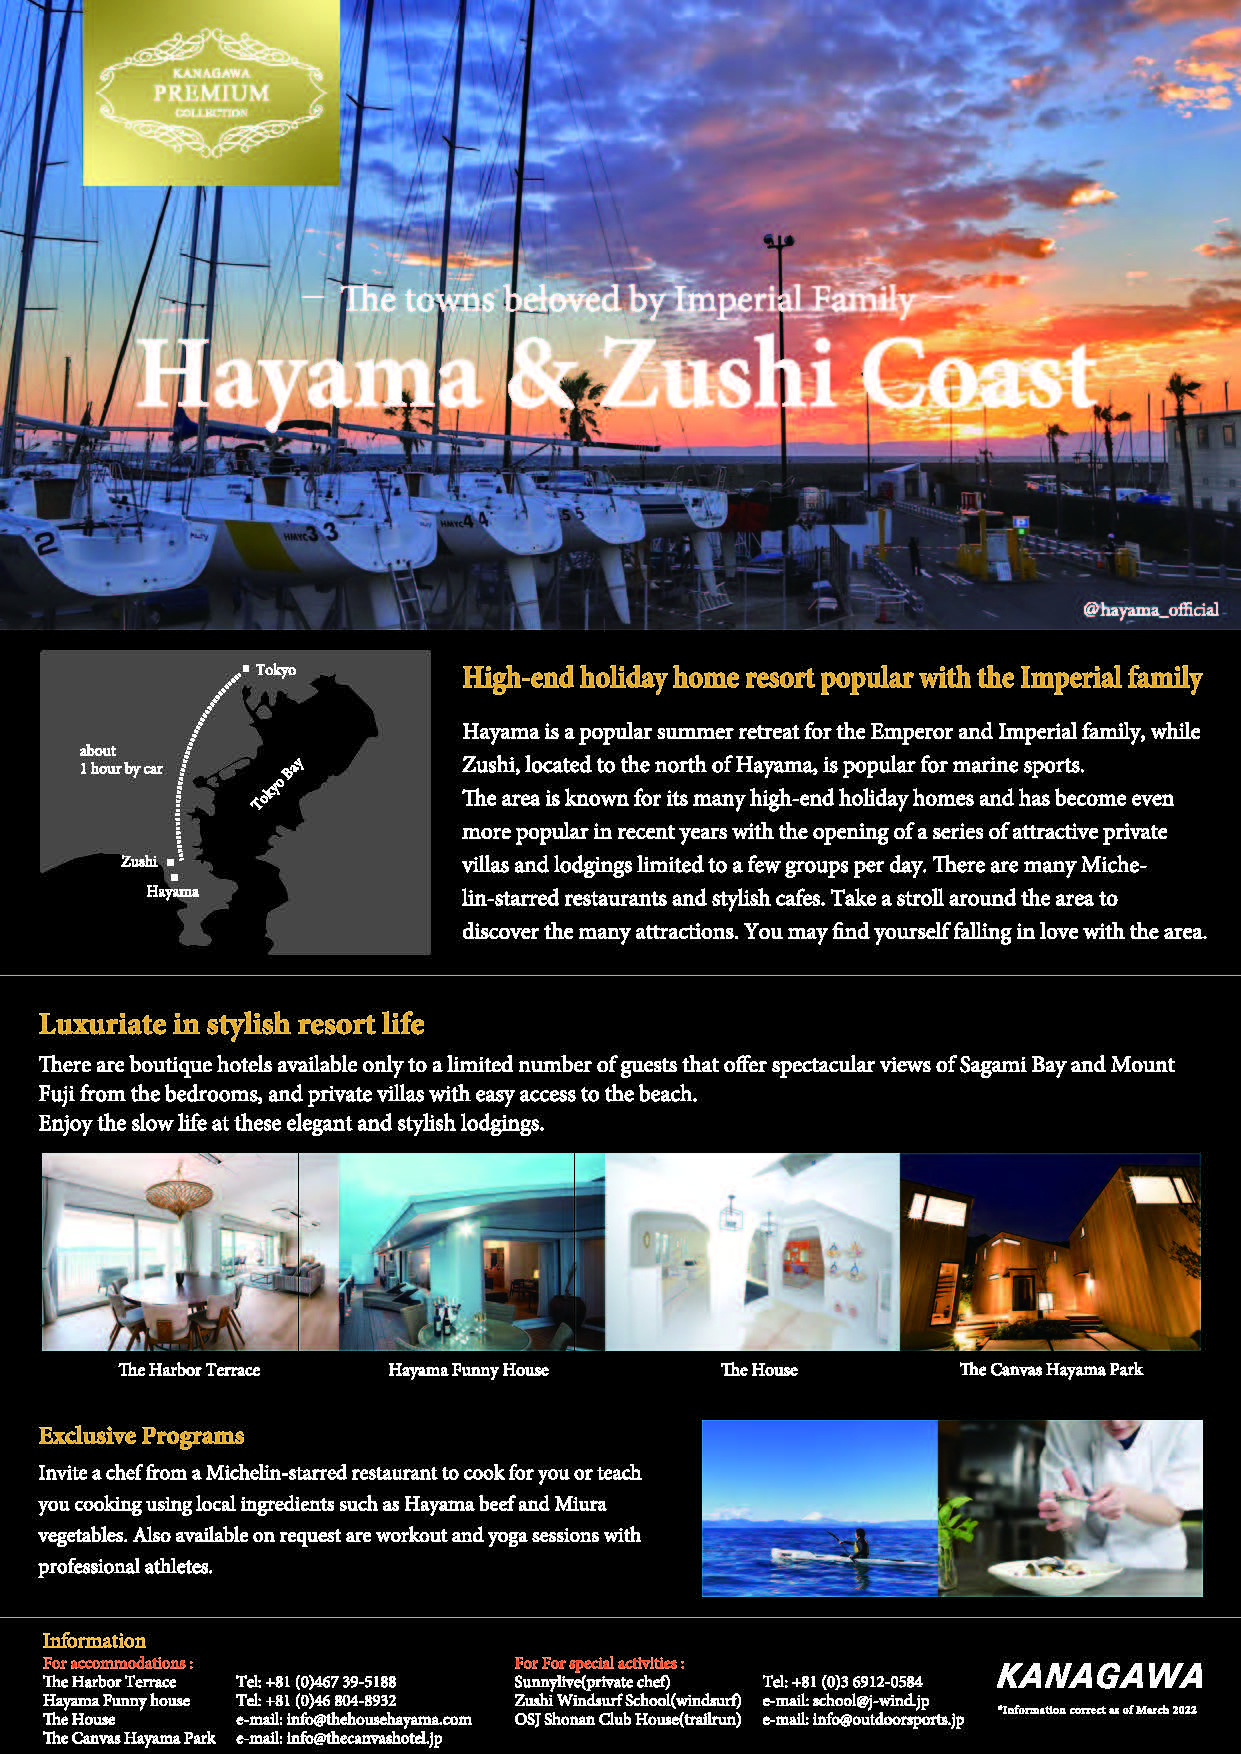 Hayama & Zushi Coast